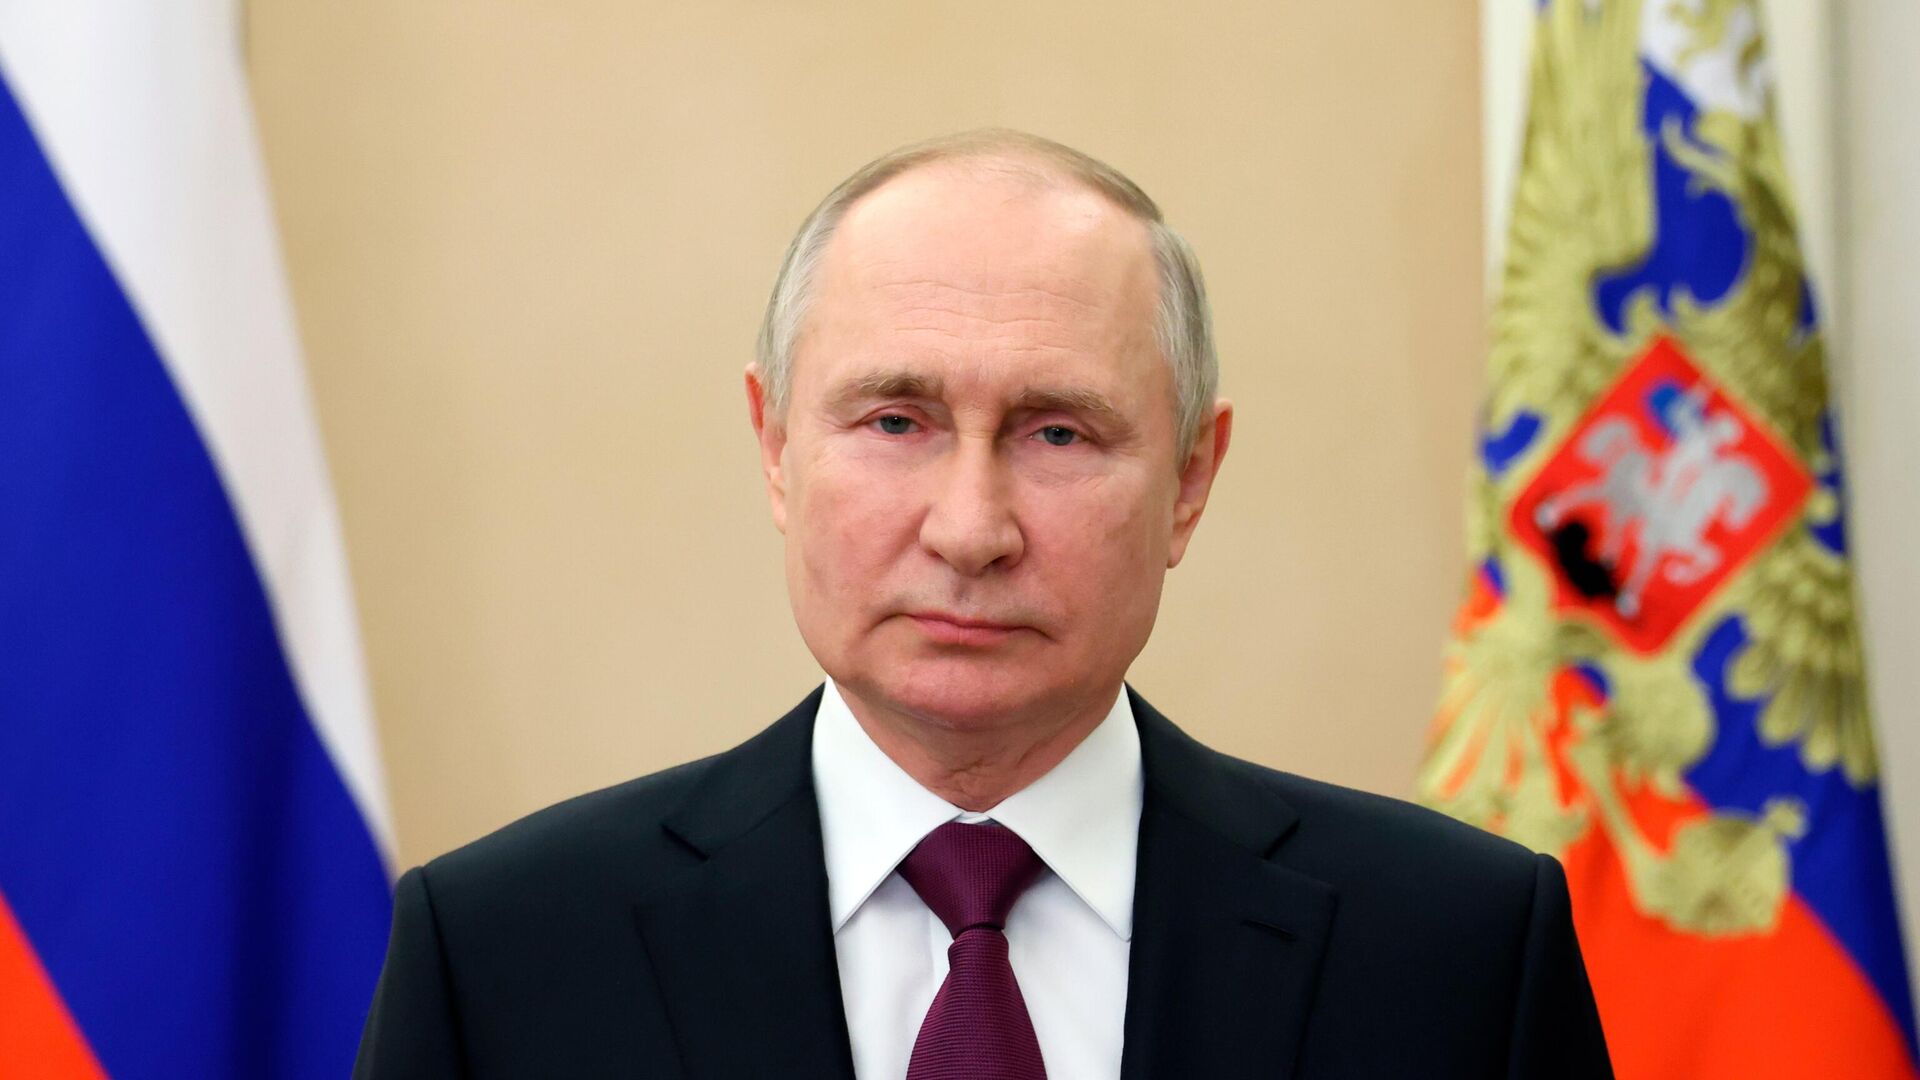 14 декабря состоится прямая линия с президентом России Владимиром Путиным